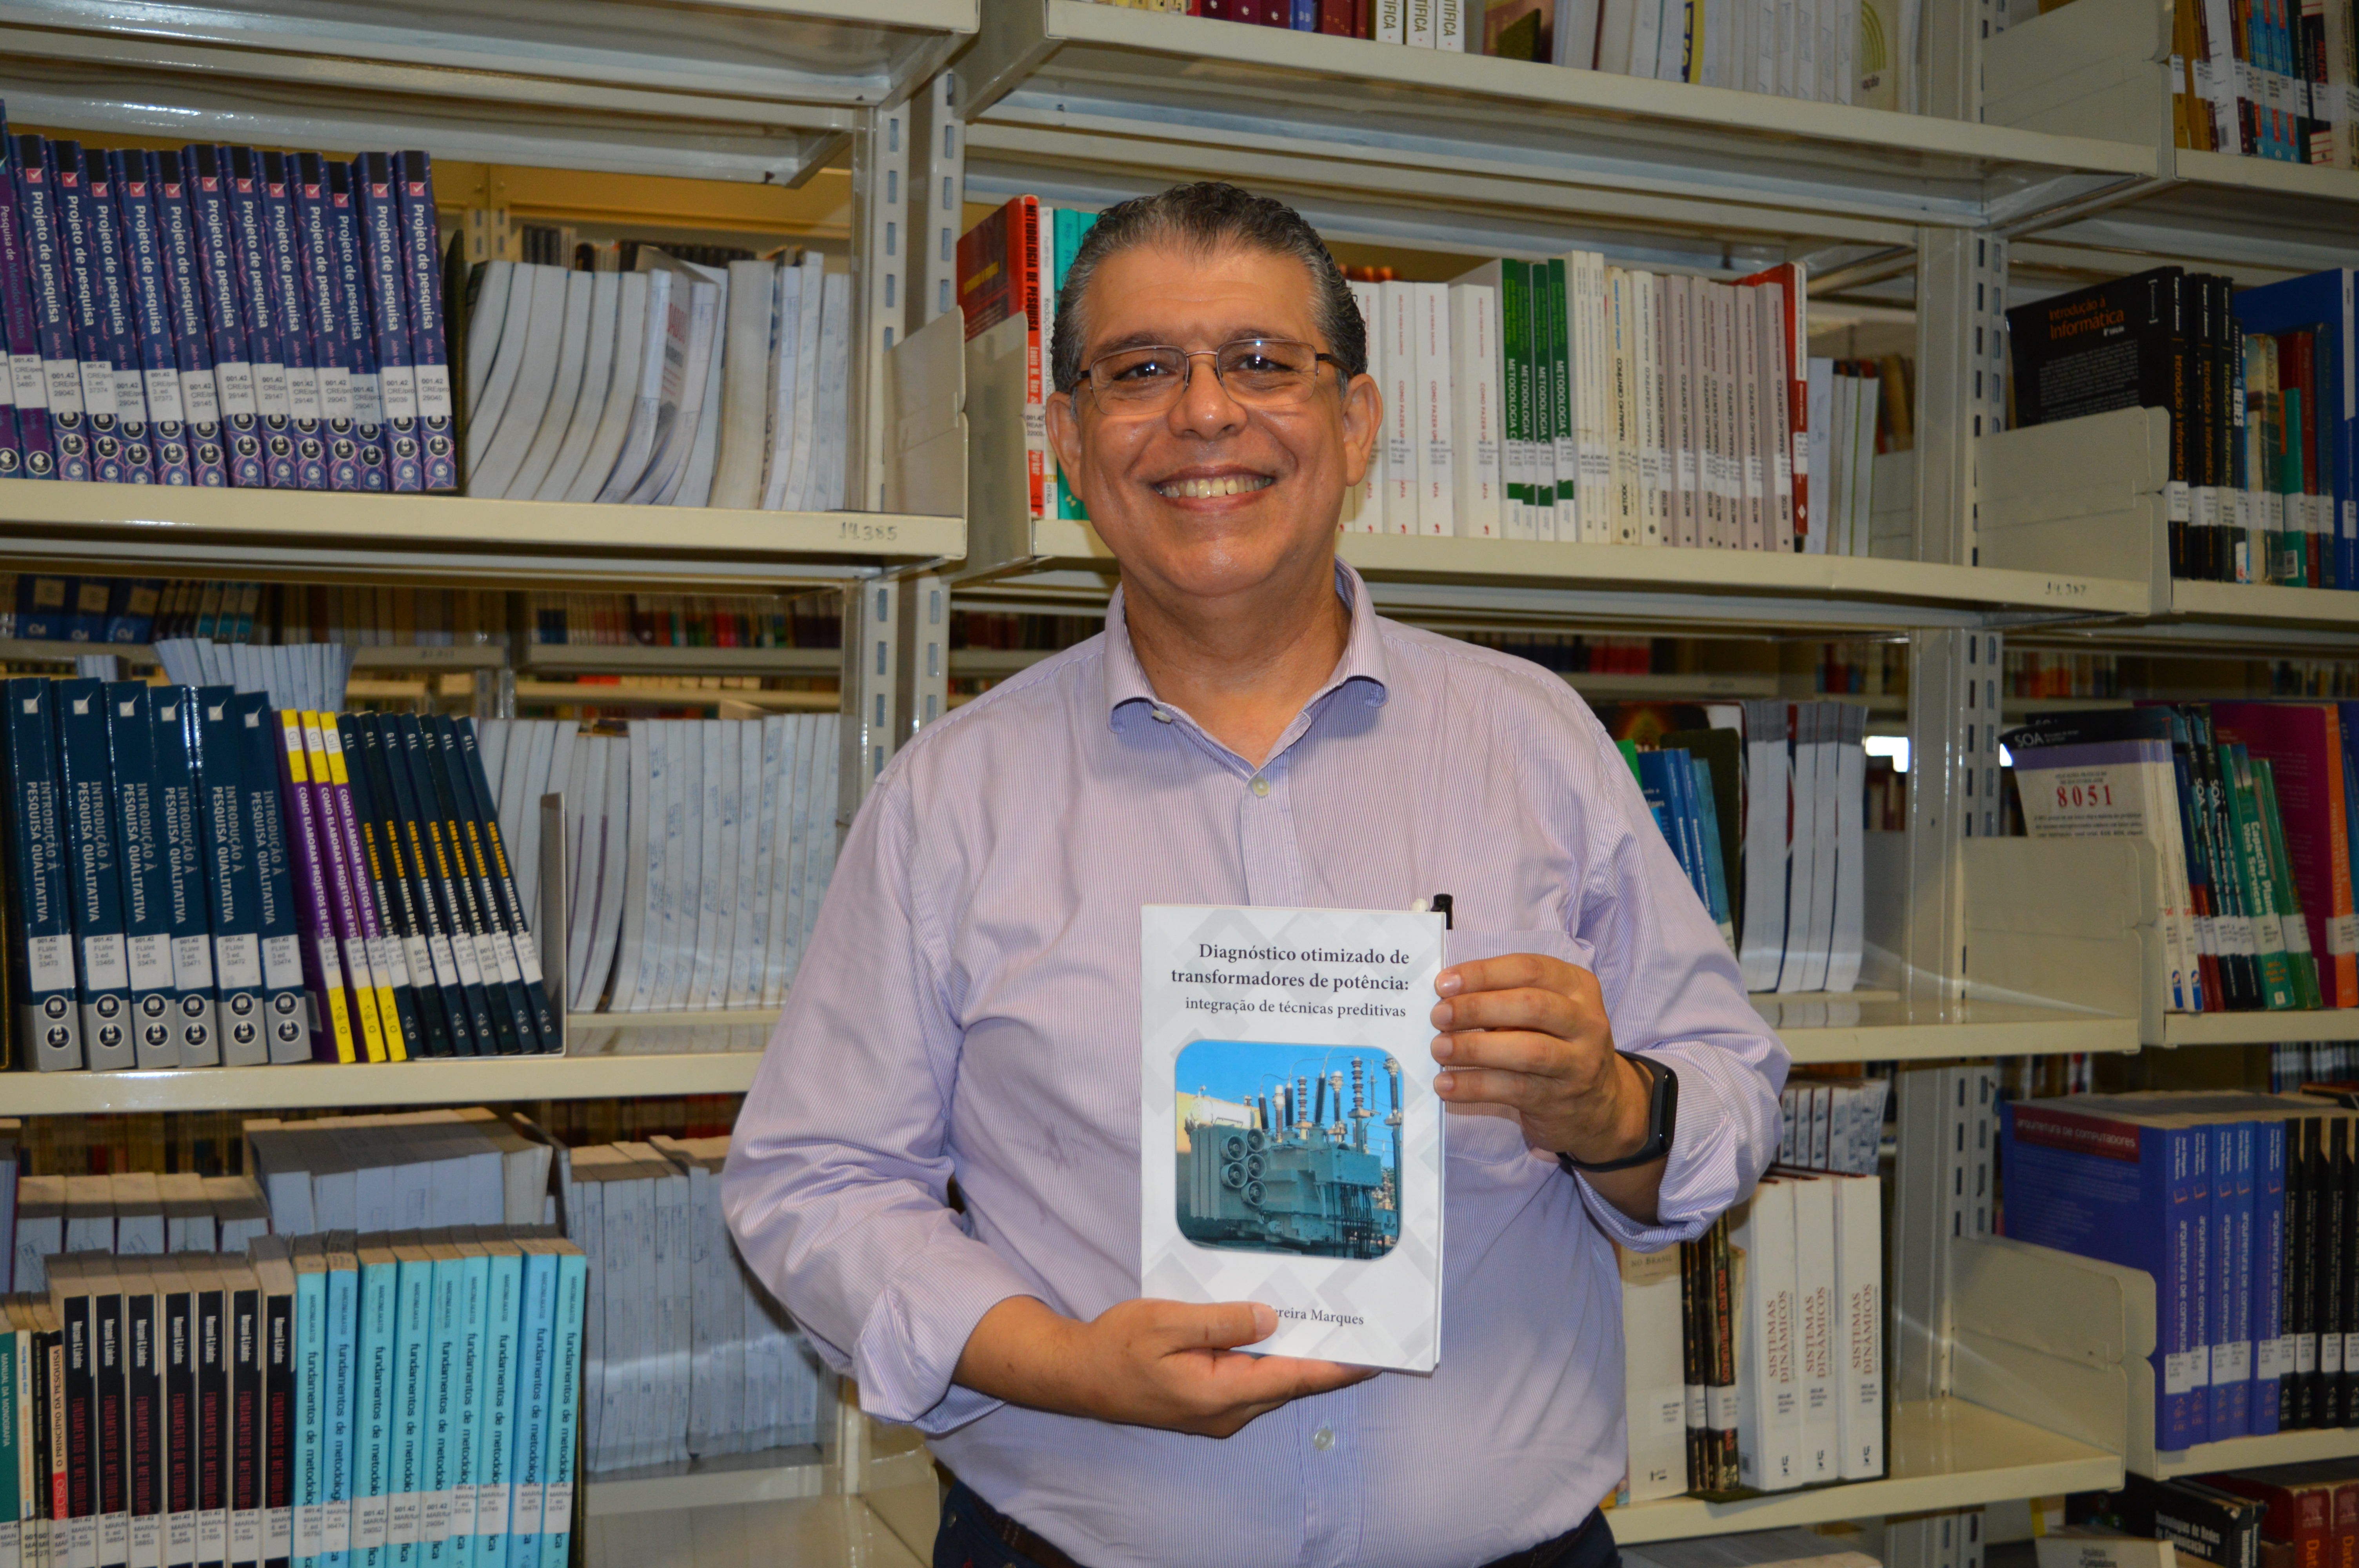 Professor do Câmpus Goiânia, André Marques, publicou neste ano livro que apresenta inovações para diagnóstico de transformadores de potência.